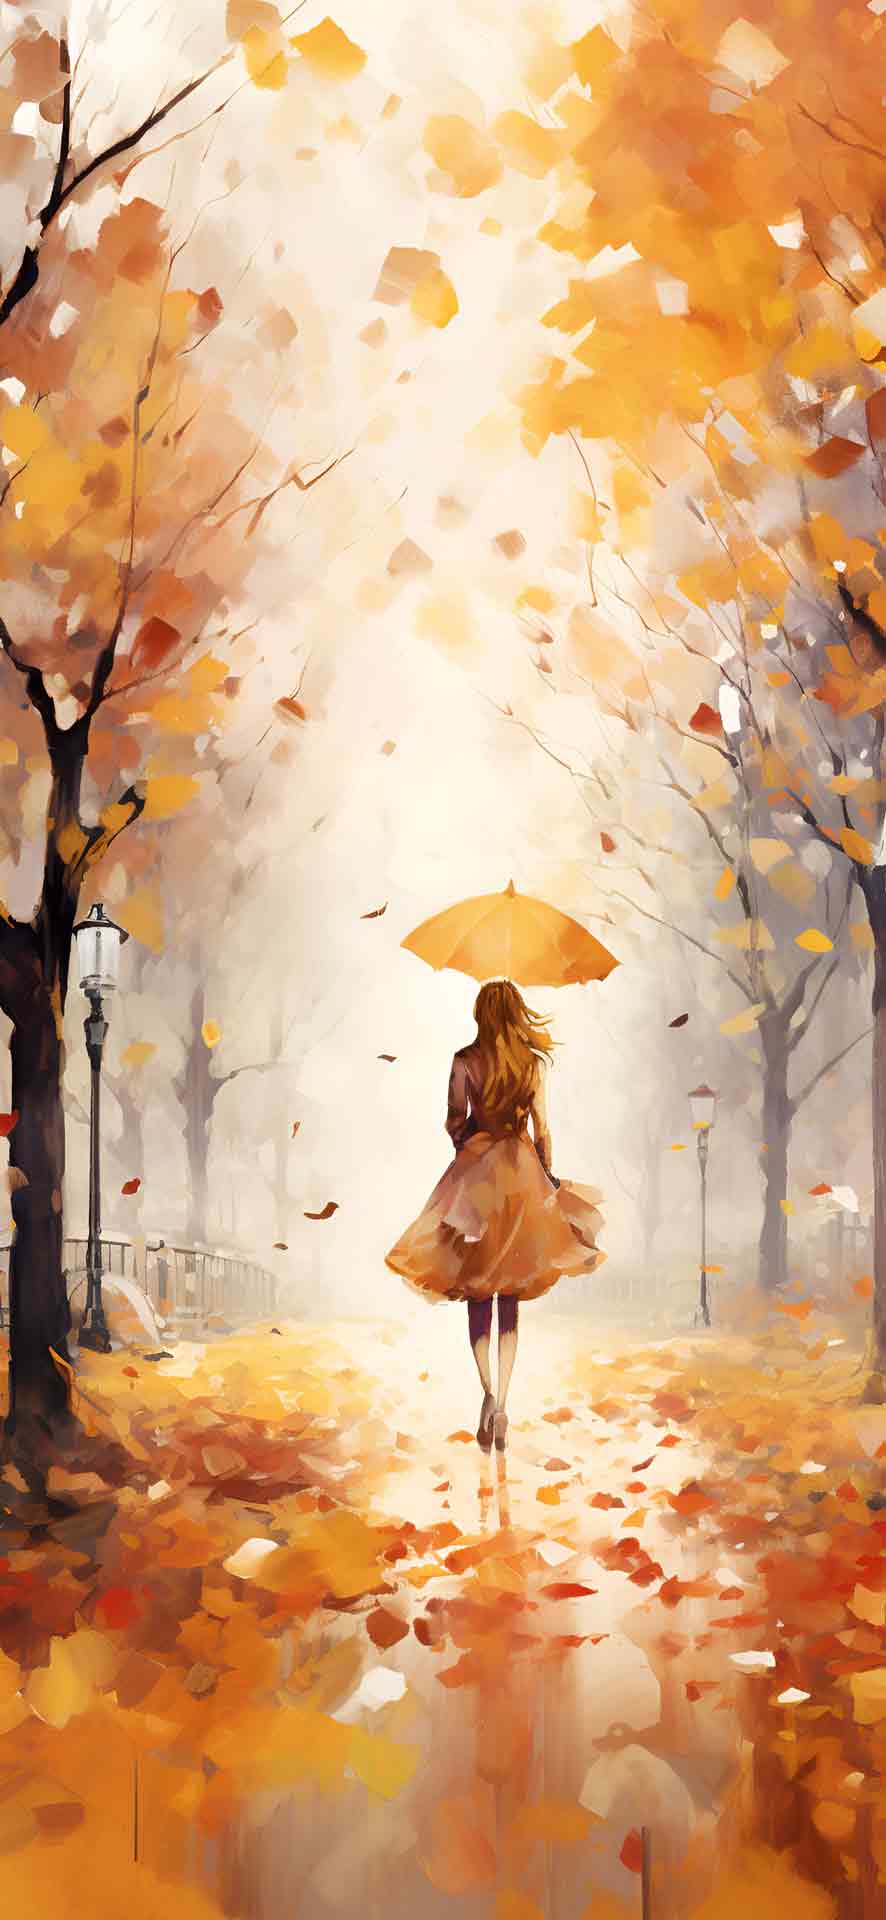 雨下的女孩水彩壁纸